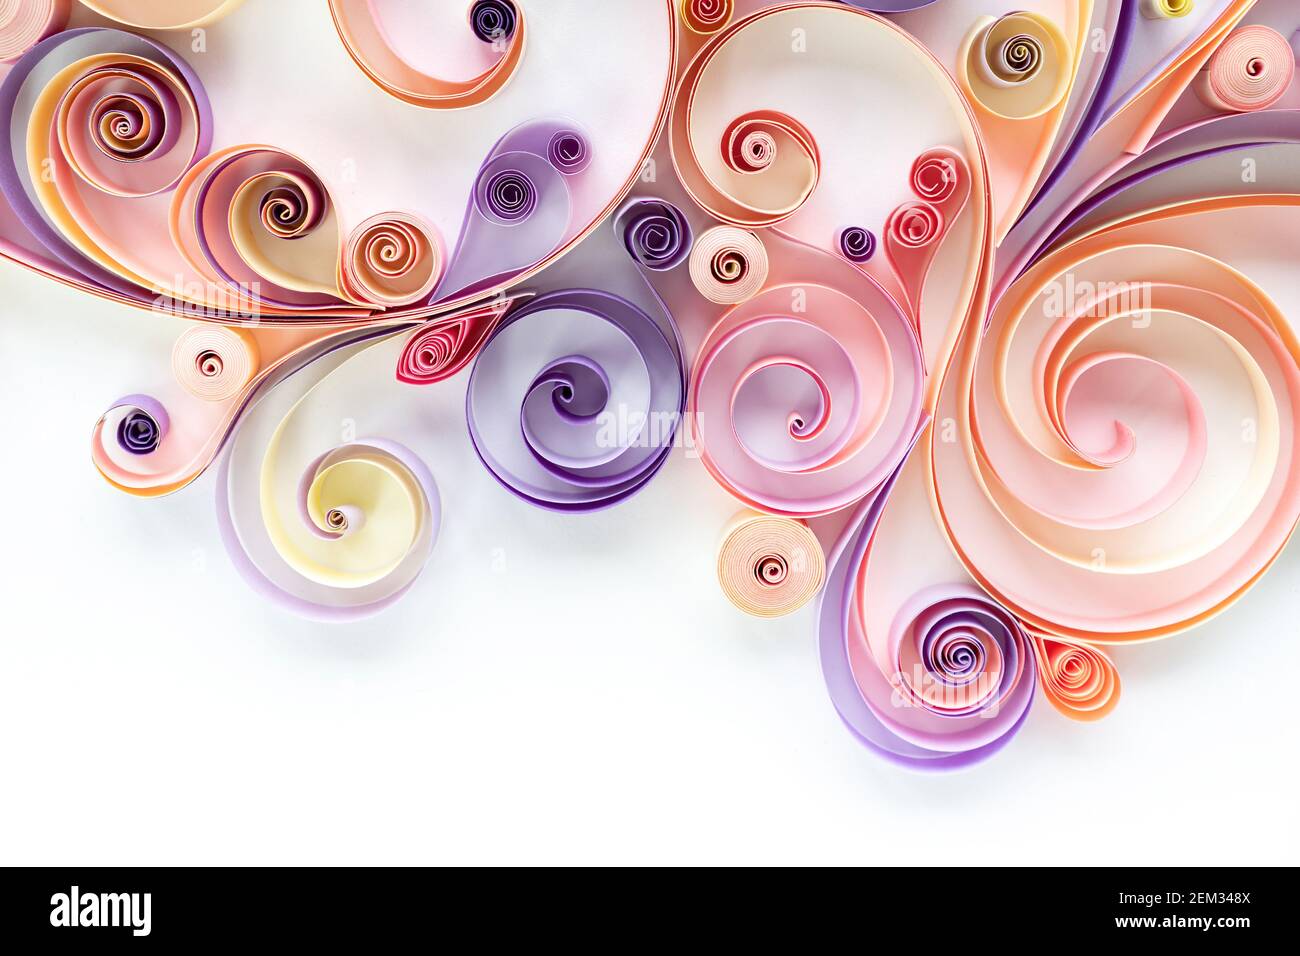 Abstrakt floralen Hintergrund aus quilling Papier farbigen Streifen auf  einem weißen Hintergrund mit Copy Space. Filigranes Papier Kunst Hobby.  Platte aus Quilling pa Stockfotografie - Alamy